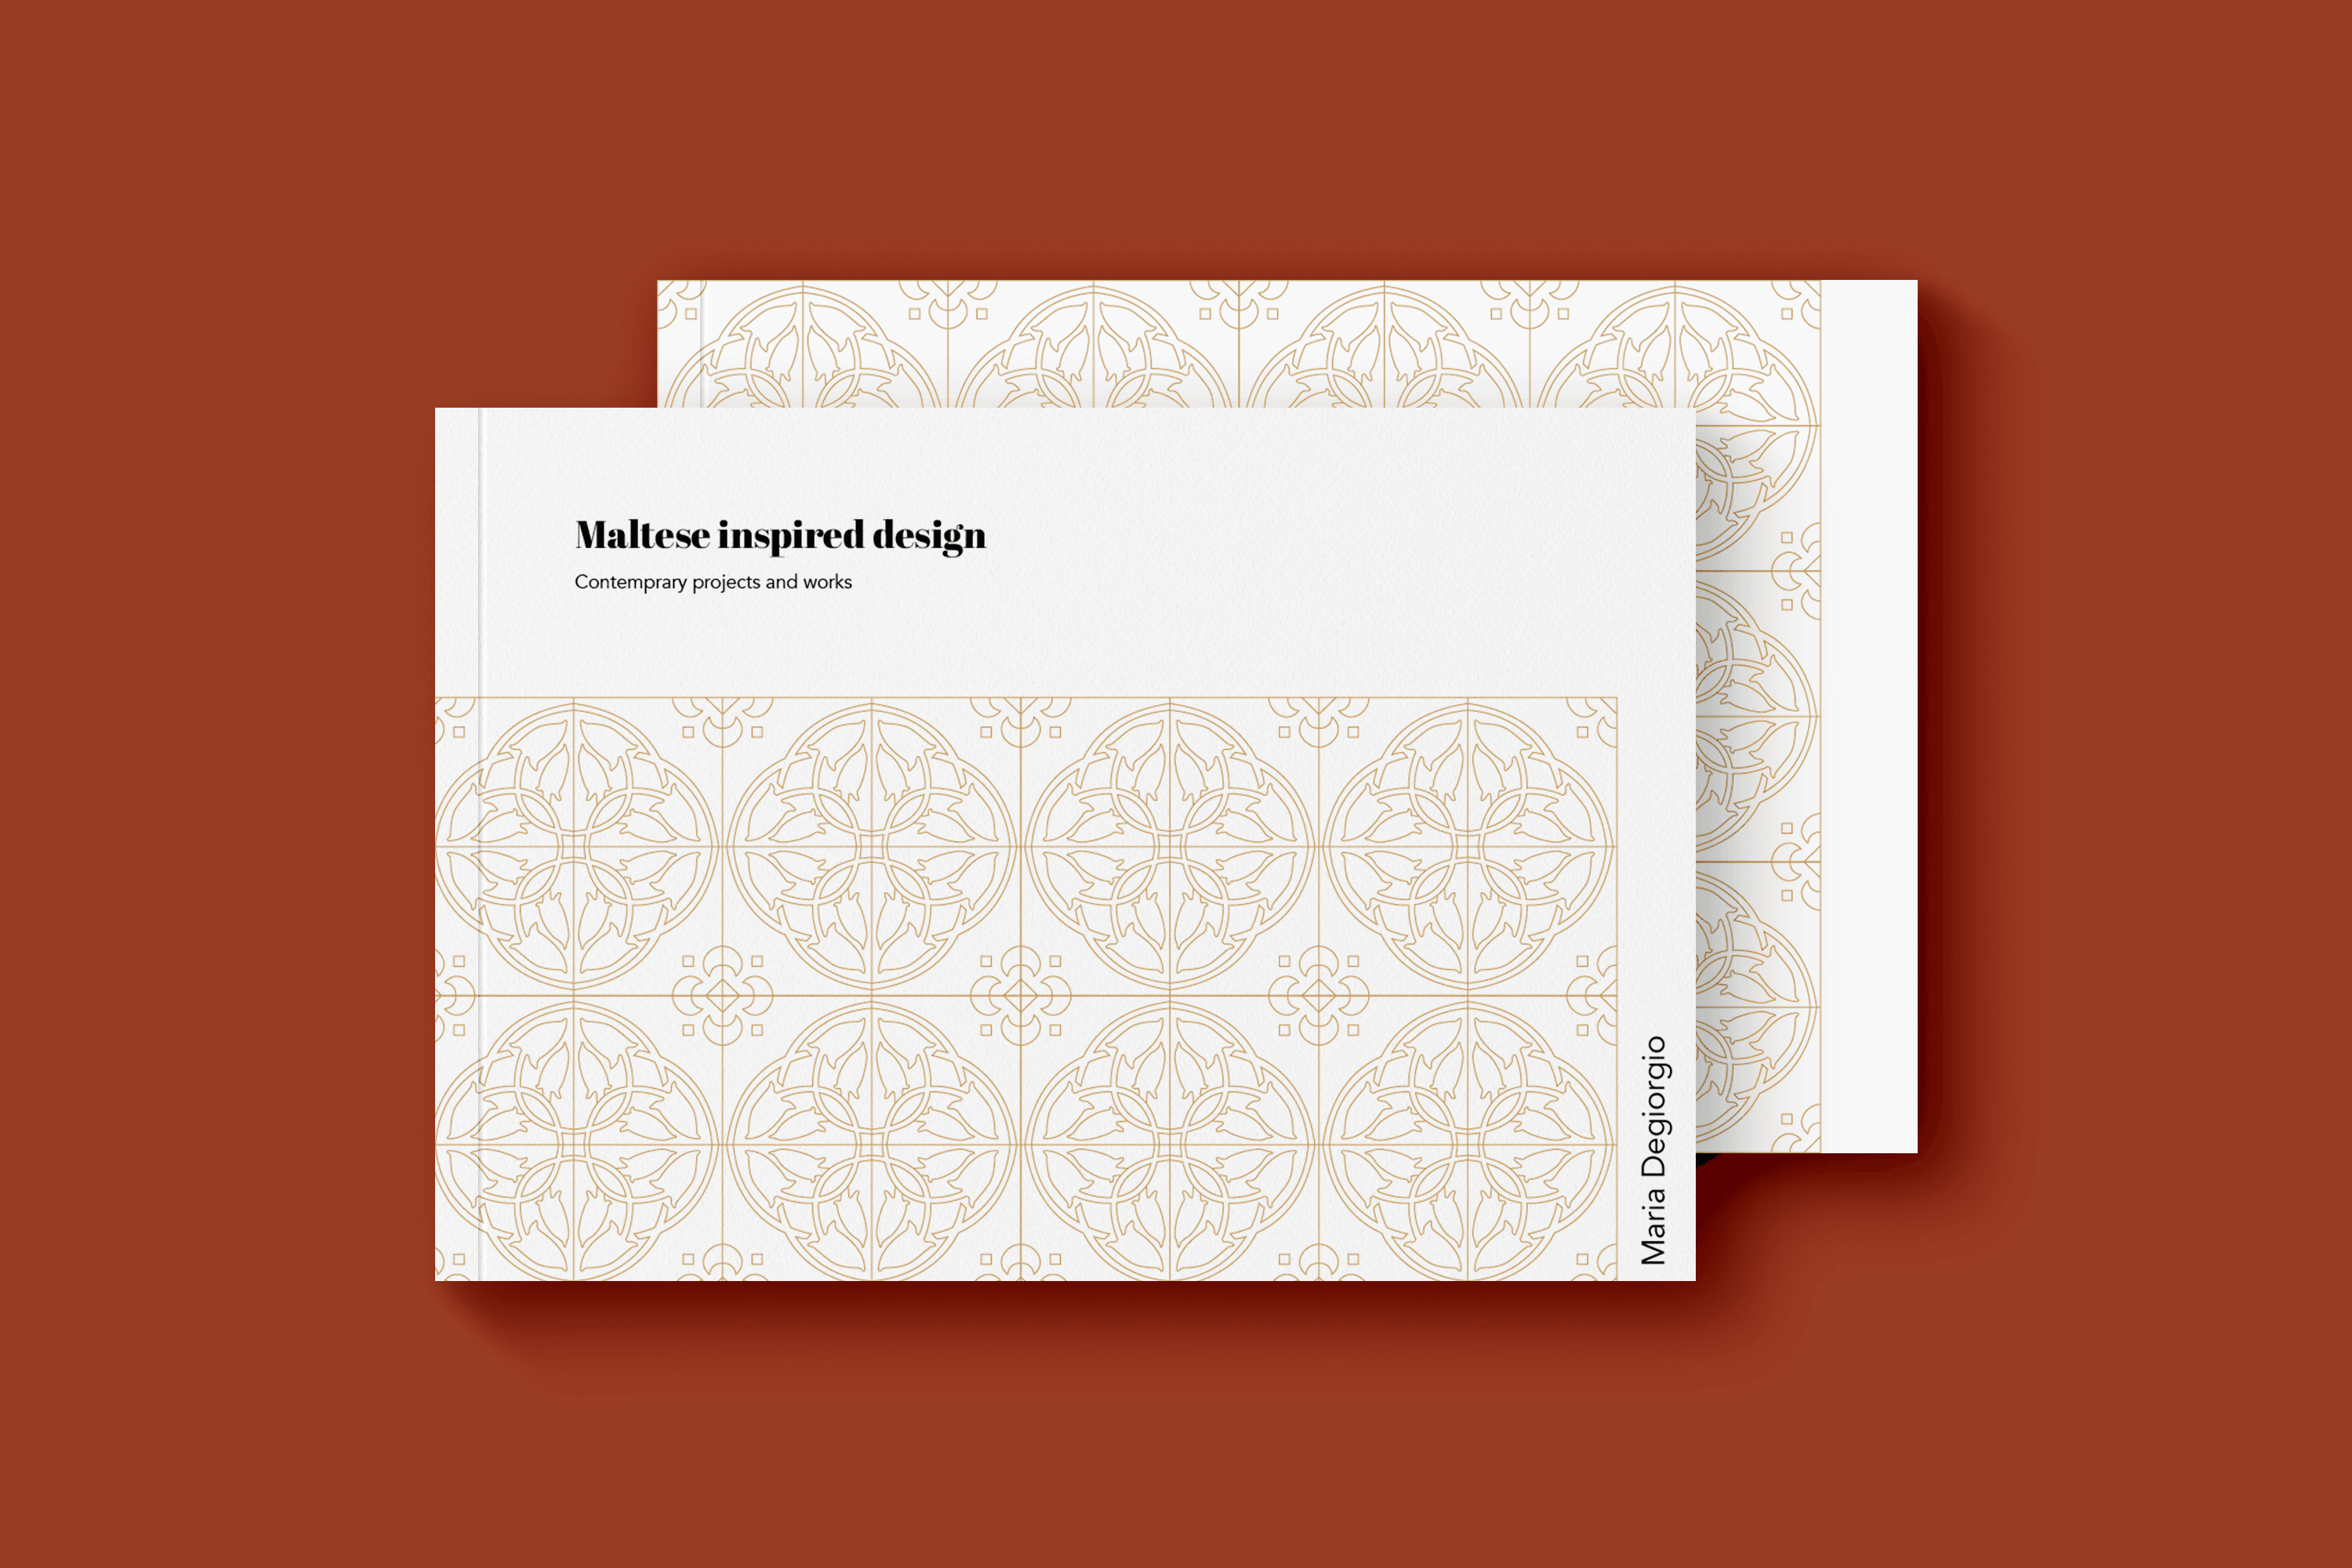 Maltese Inspired Design - Publication (500x300)